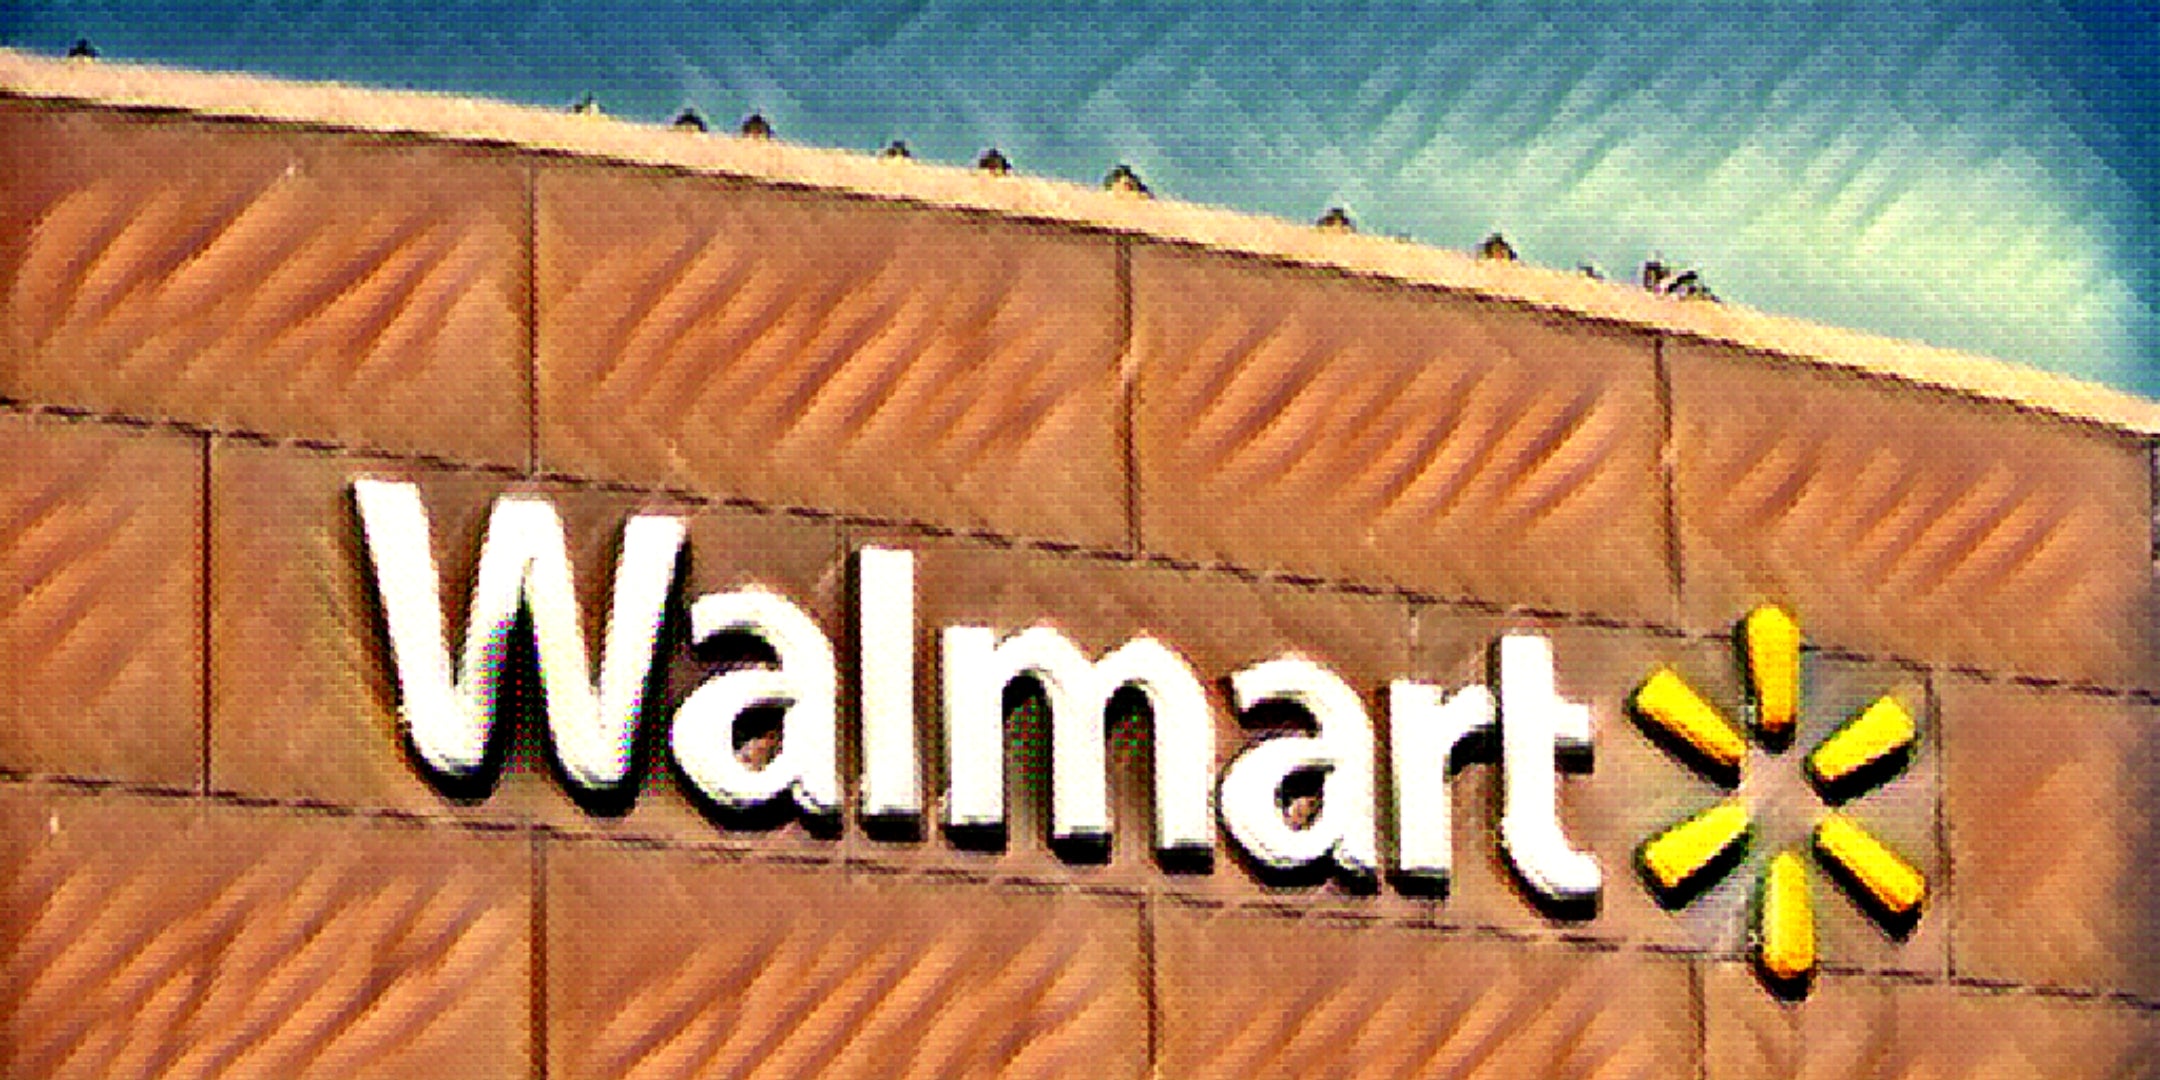 Does Walmart Drug Test?